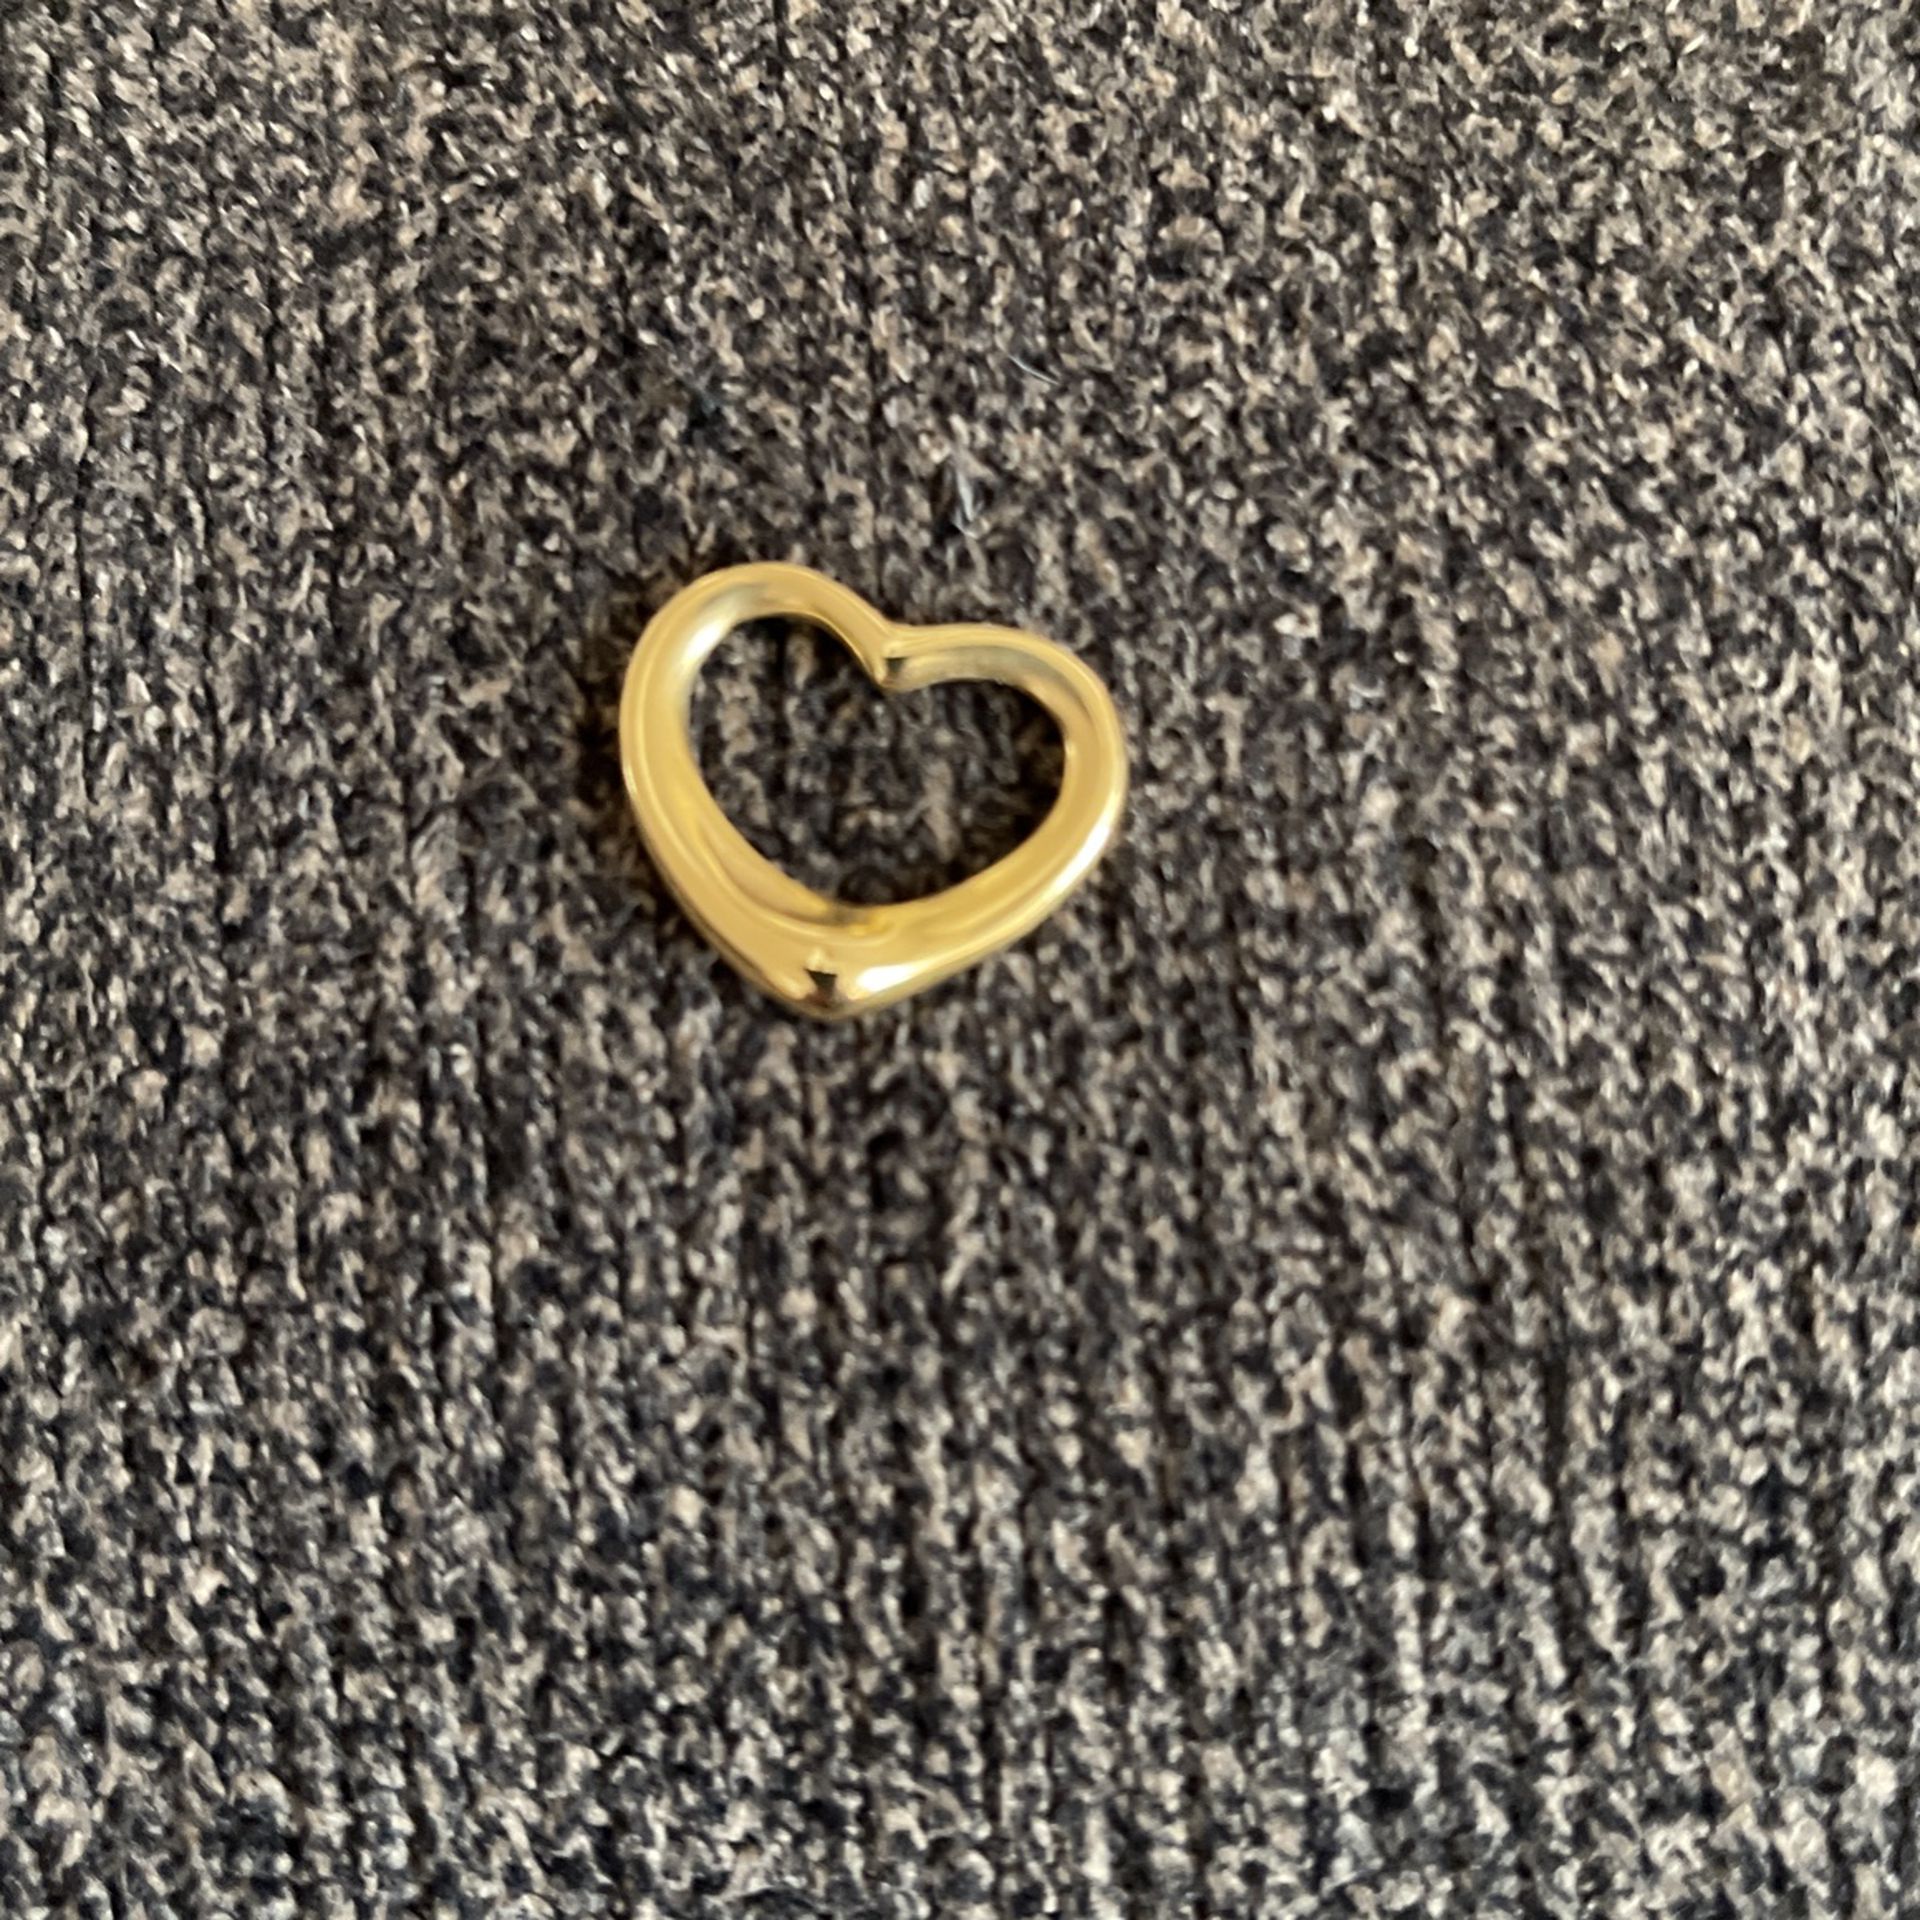 14 Karat Tiffany Heart Charm 